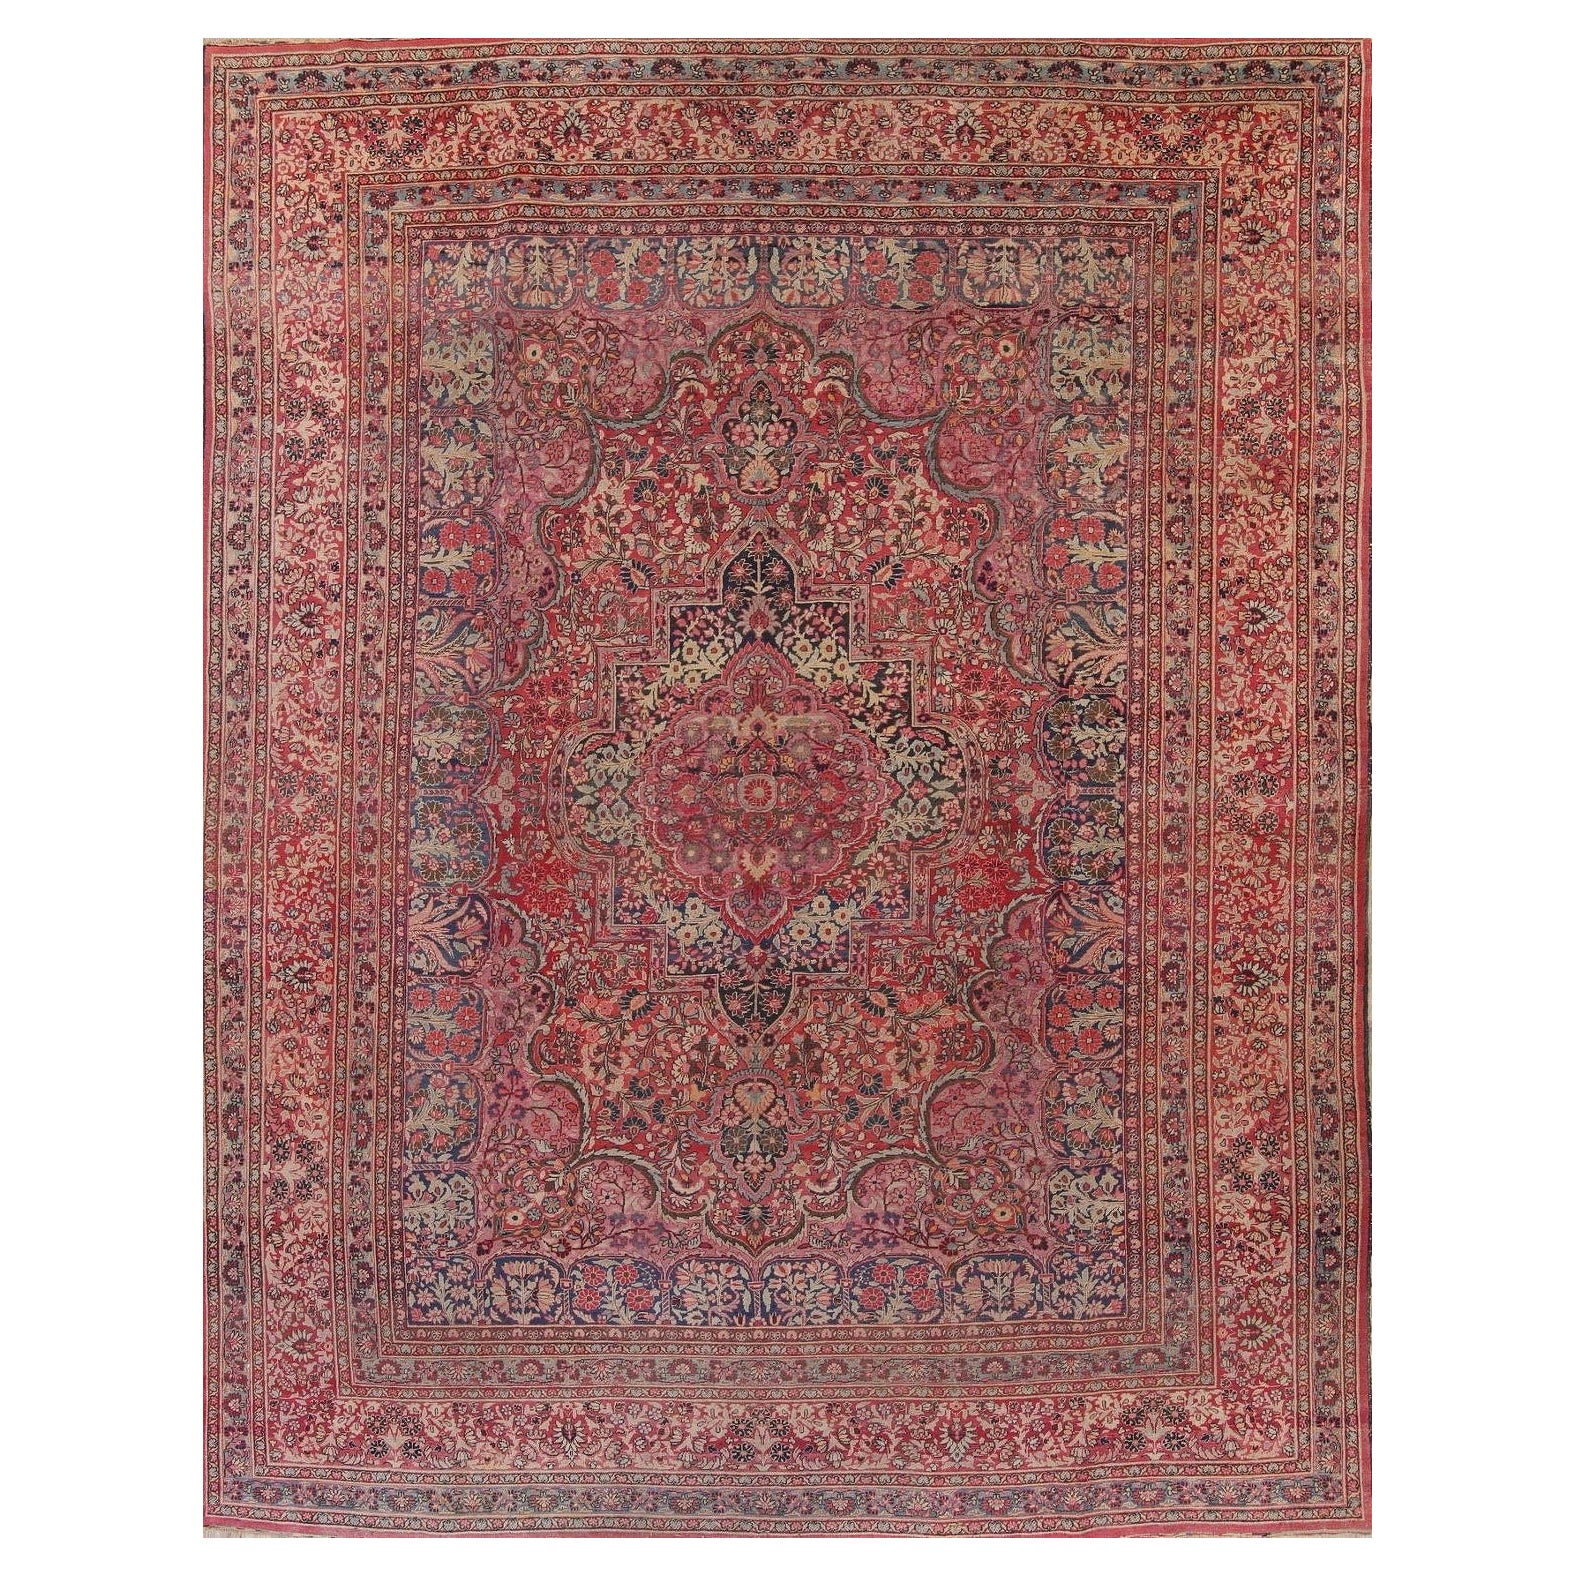 Magnifique tapis ancien aux tons pastel avec toutes les couleurs et détails, vers les années 1920